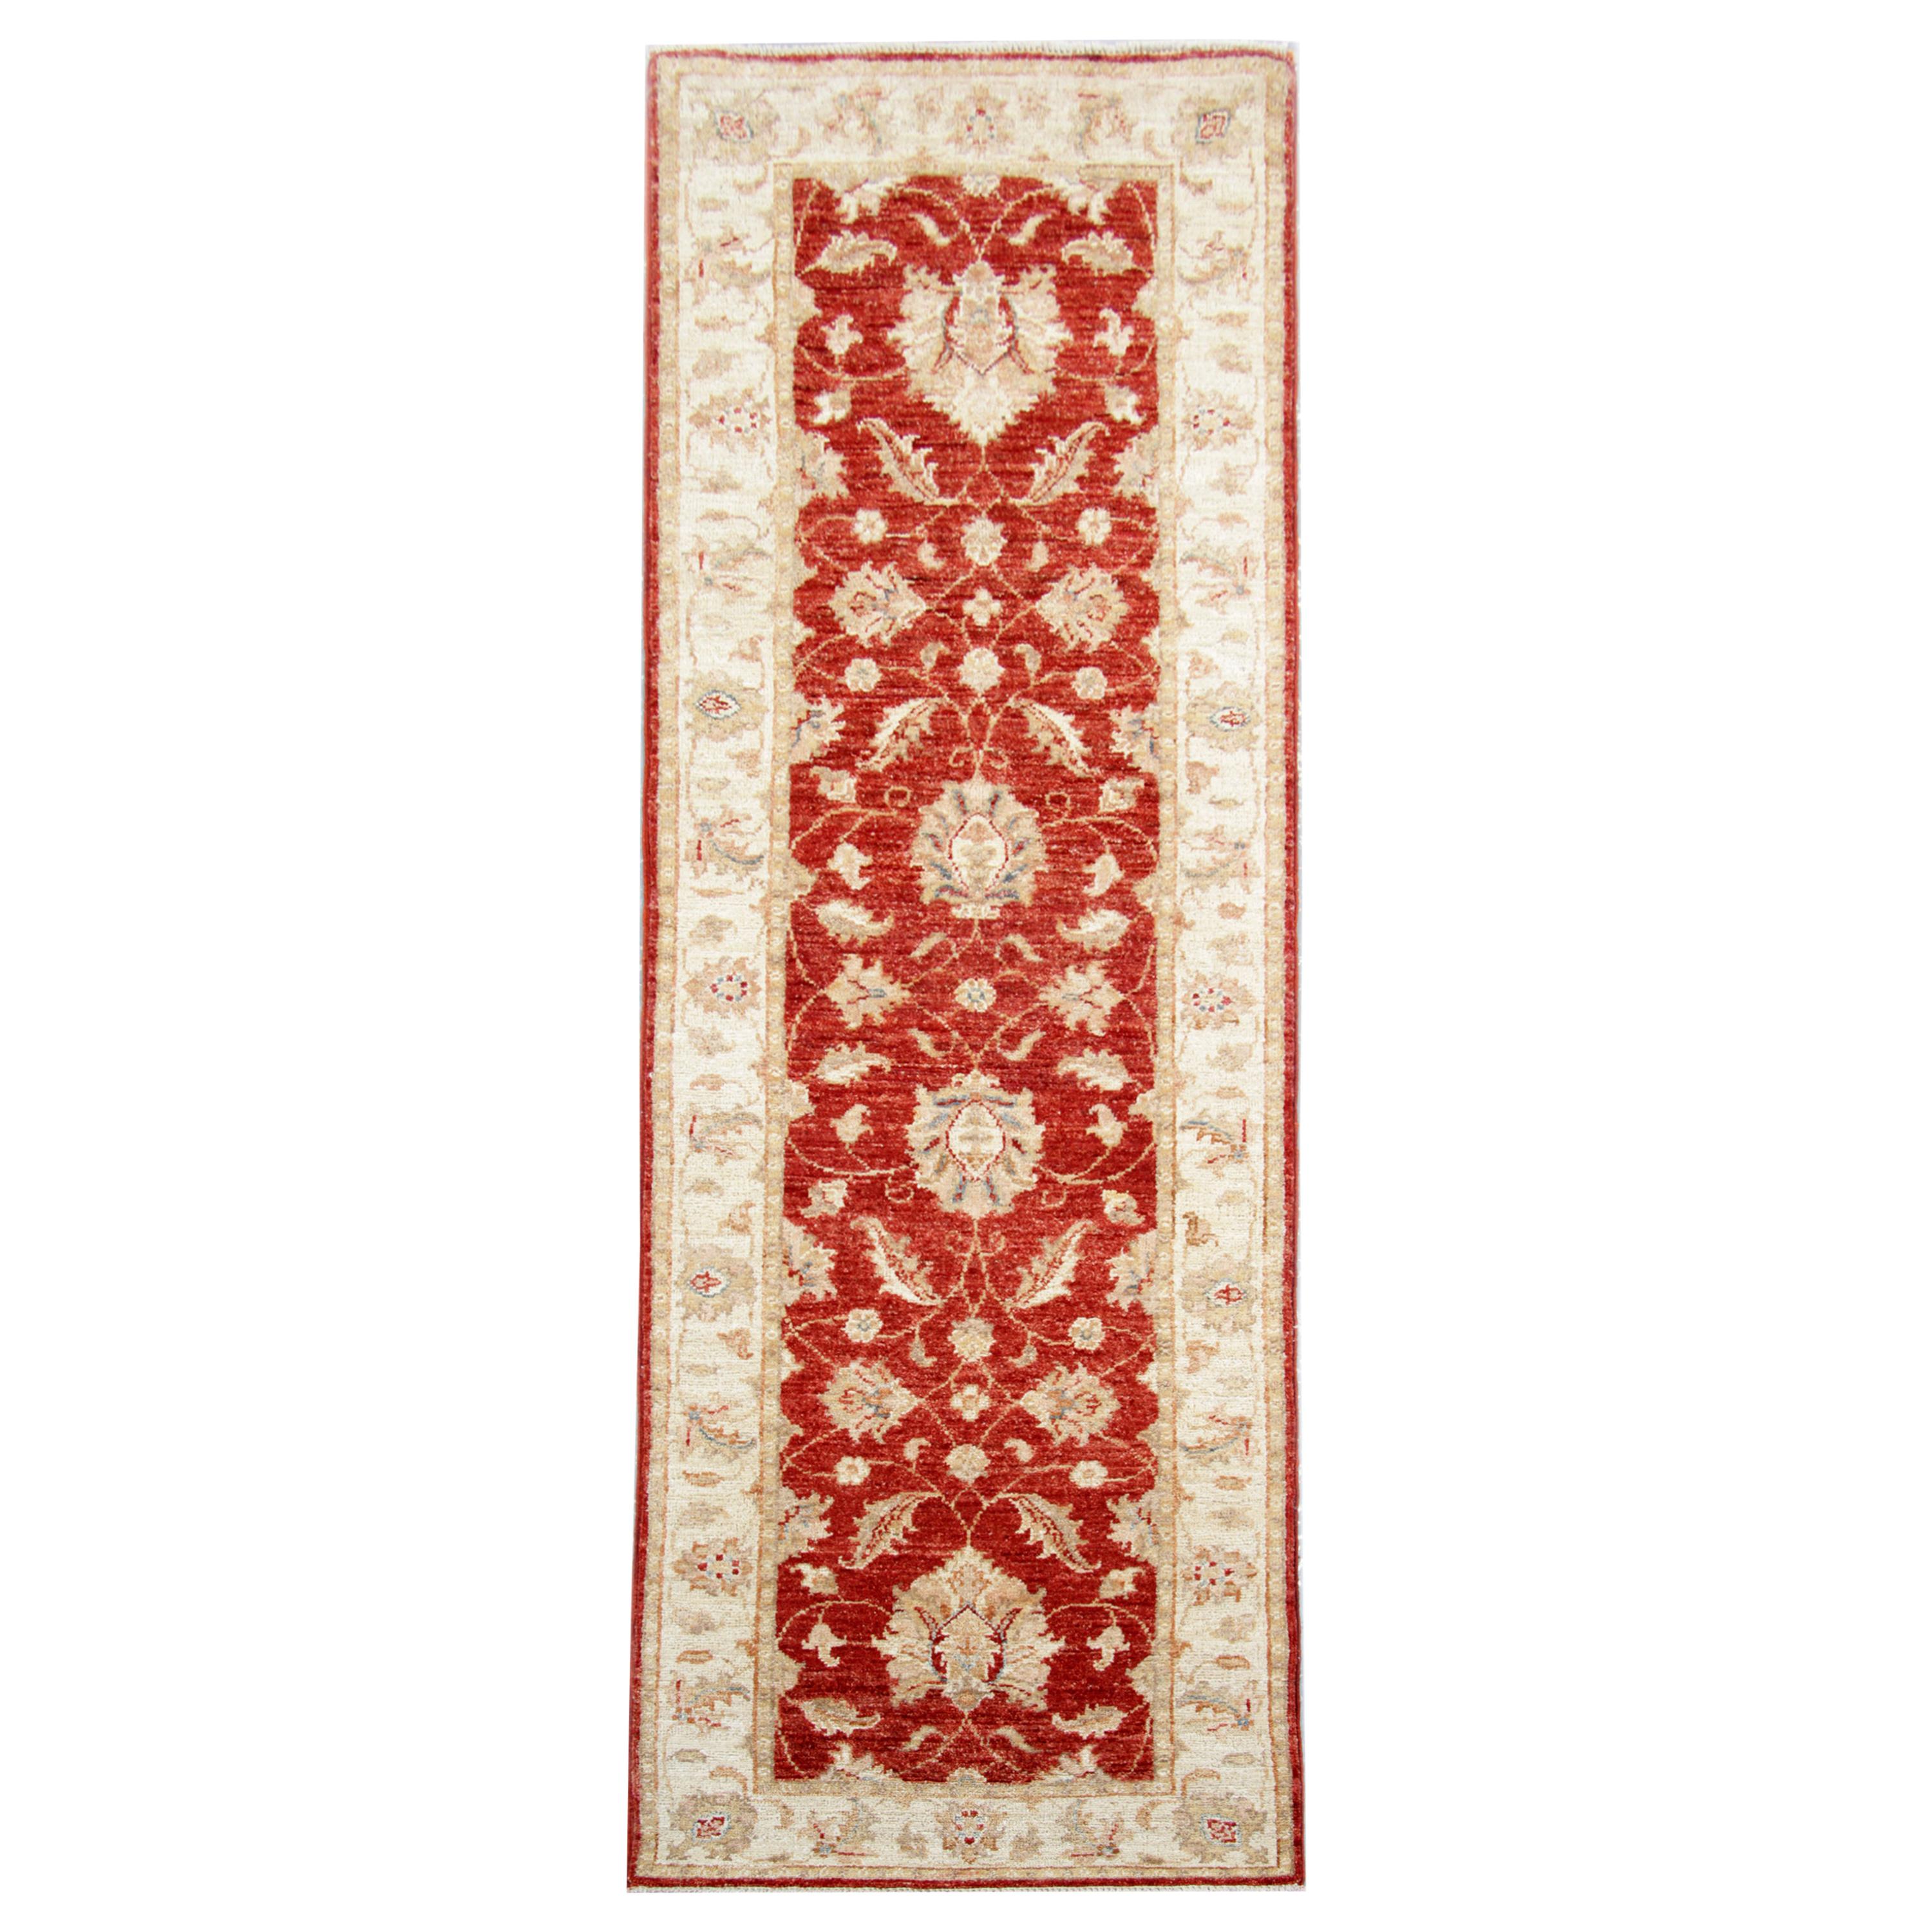 Tapis de couloir traditionnel rouge, tapis de couloir à fleurs, tapis en laine tissé à la main